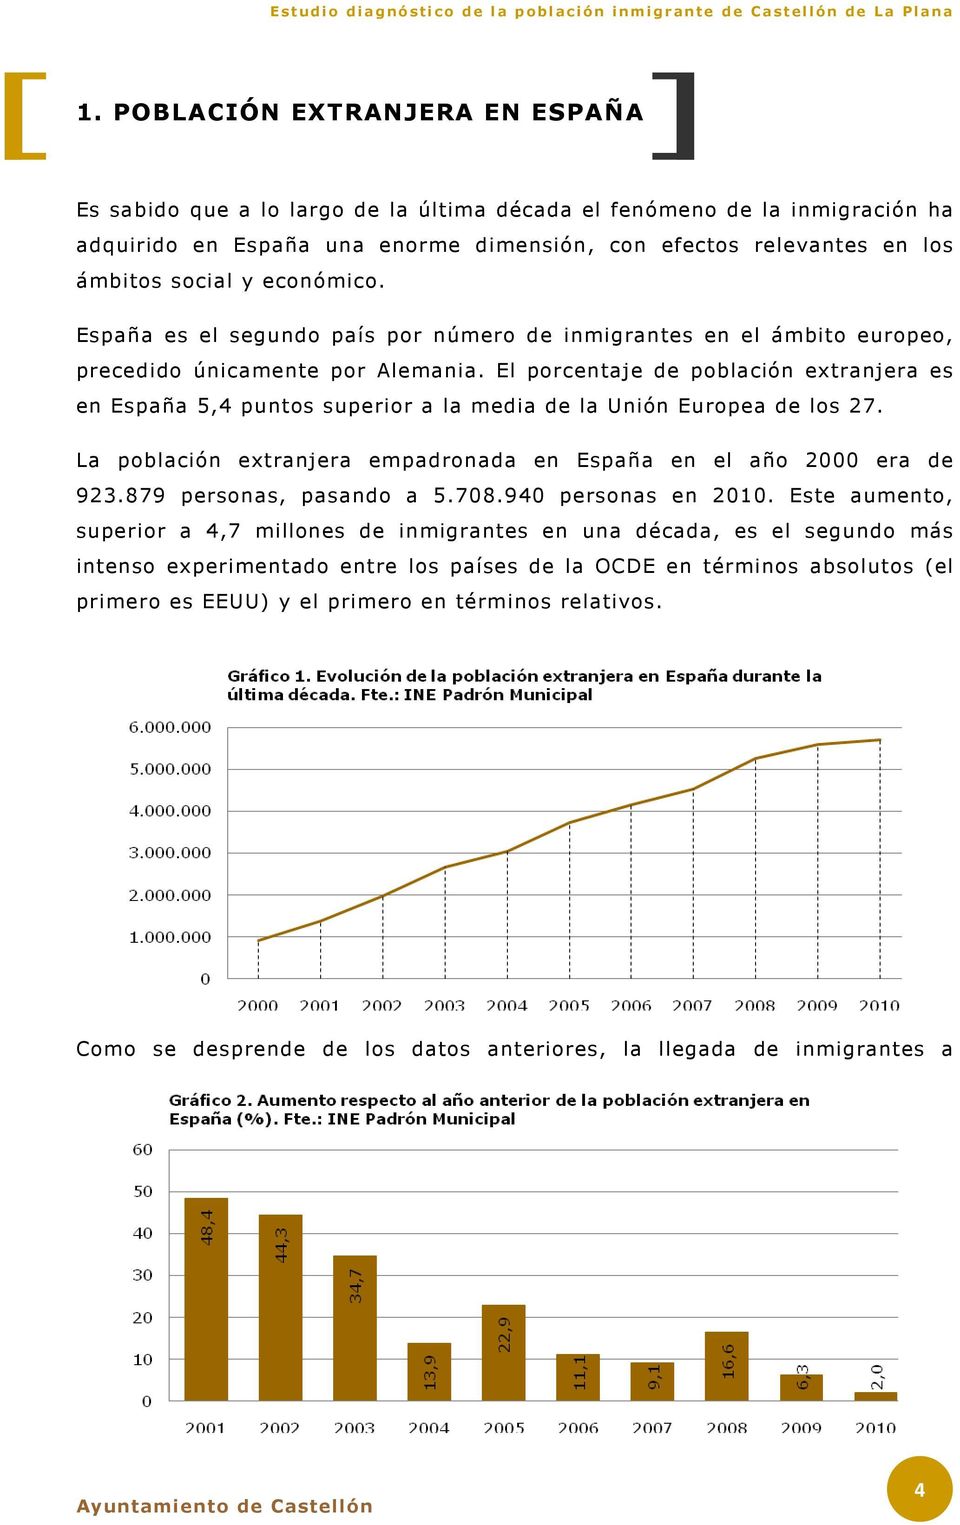 El porcentaje de población extranjera es en España 5,4 puntos superior a la media de la Unión Europea de los 27. La población extranjera empadronada en España en el año 2000 era de 923.